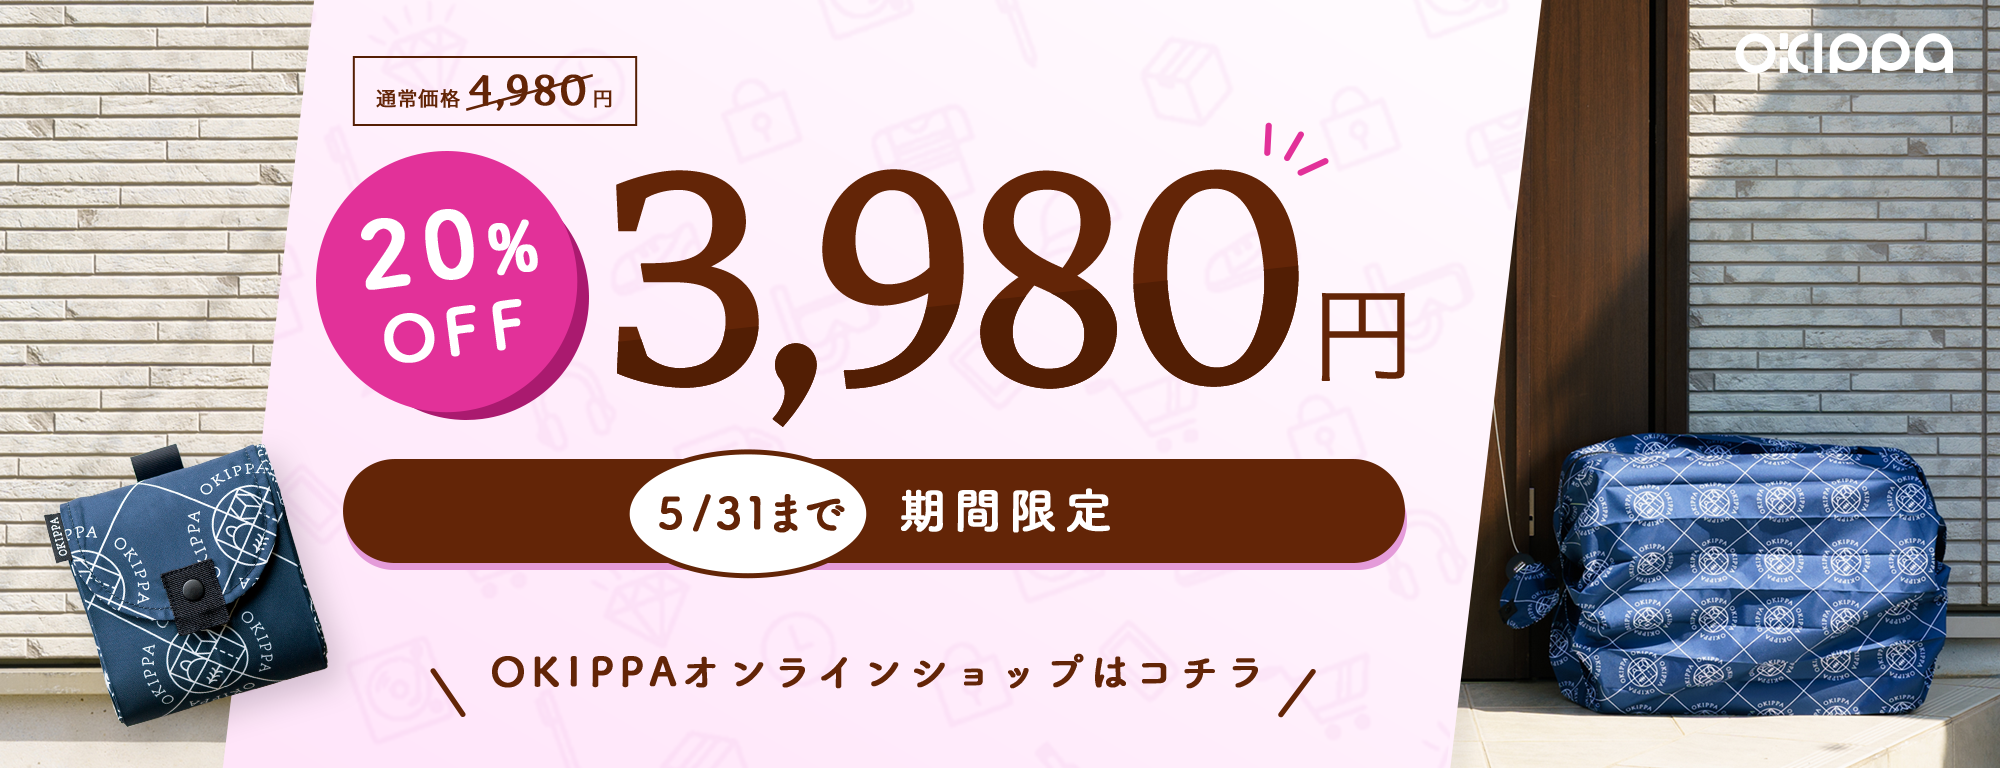 5/31まで3980円キャンペーン